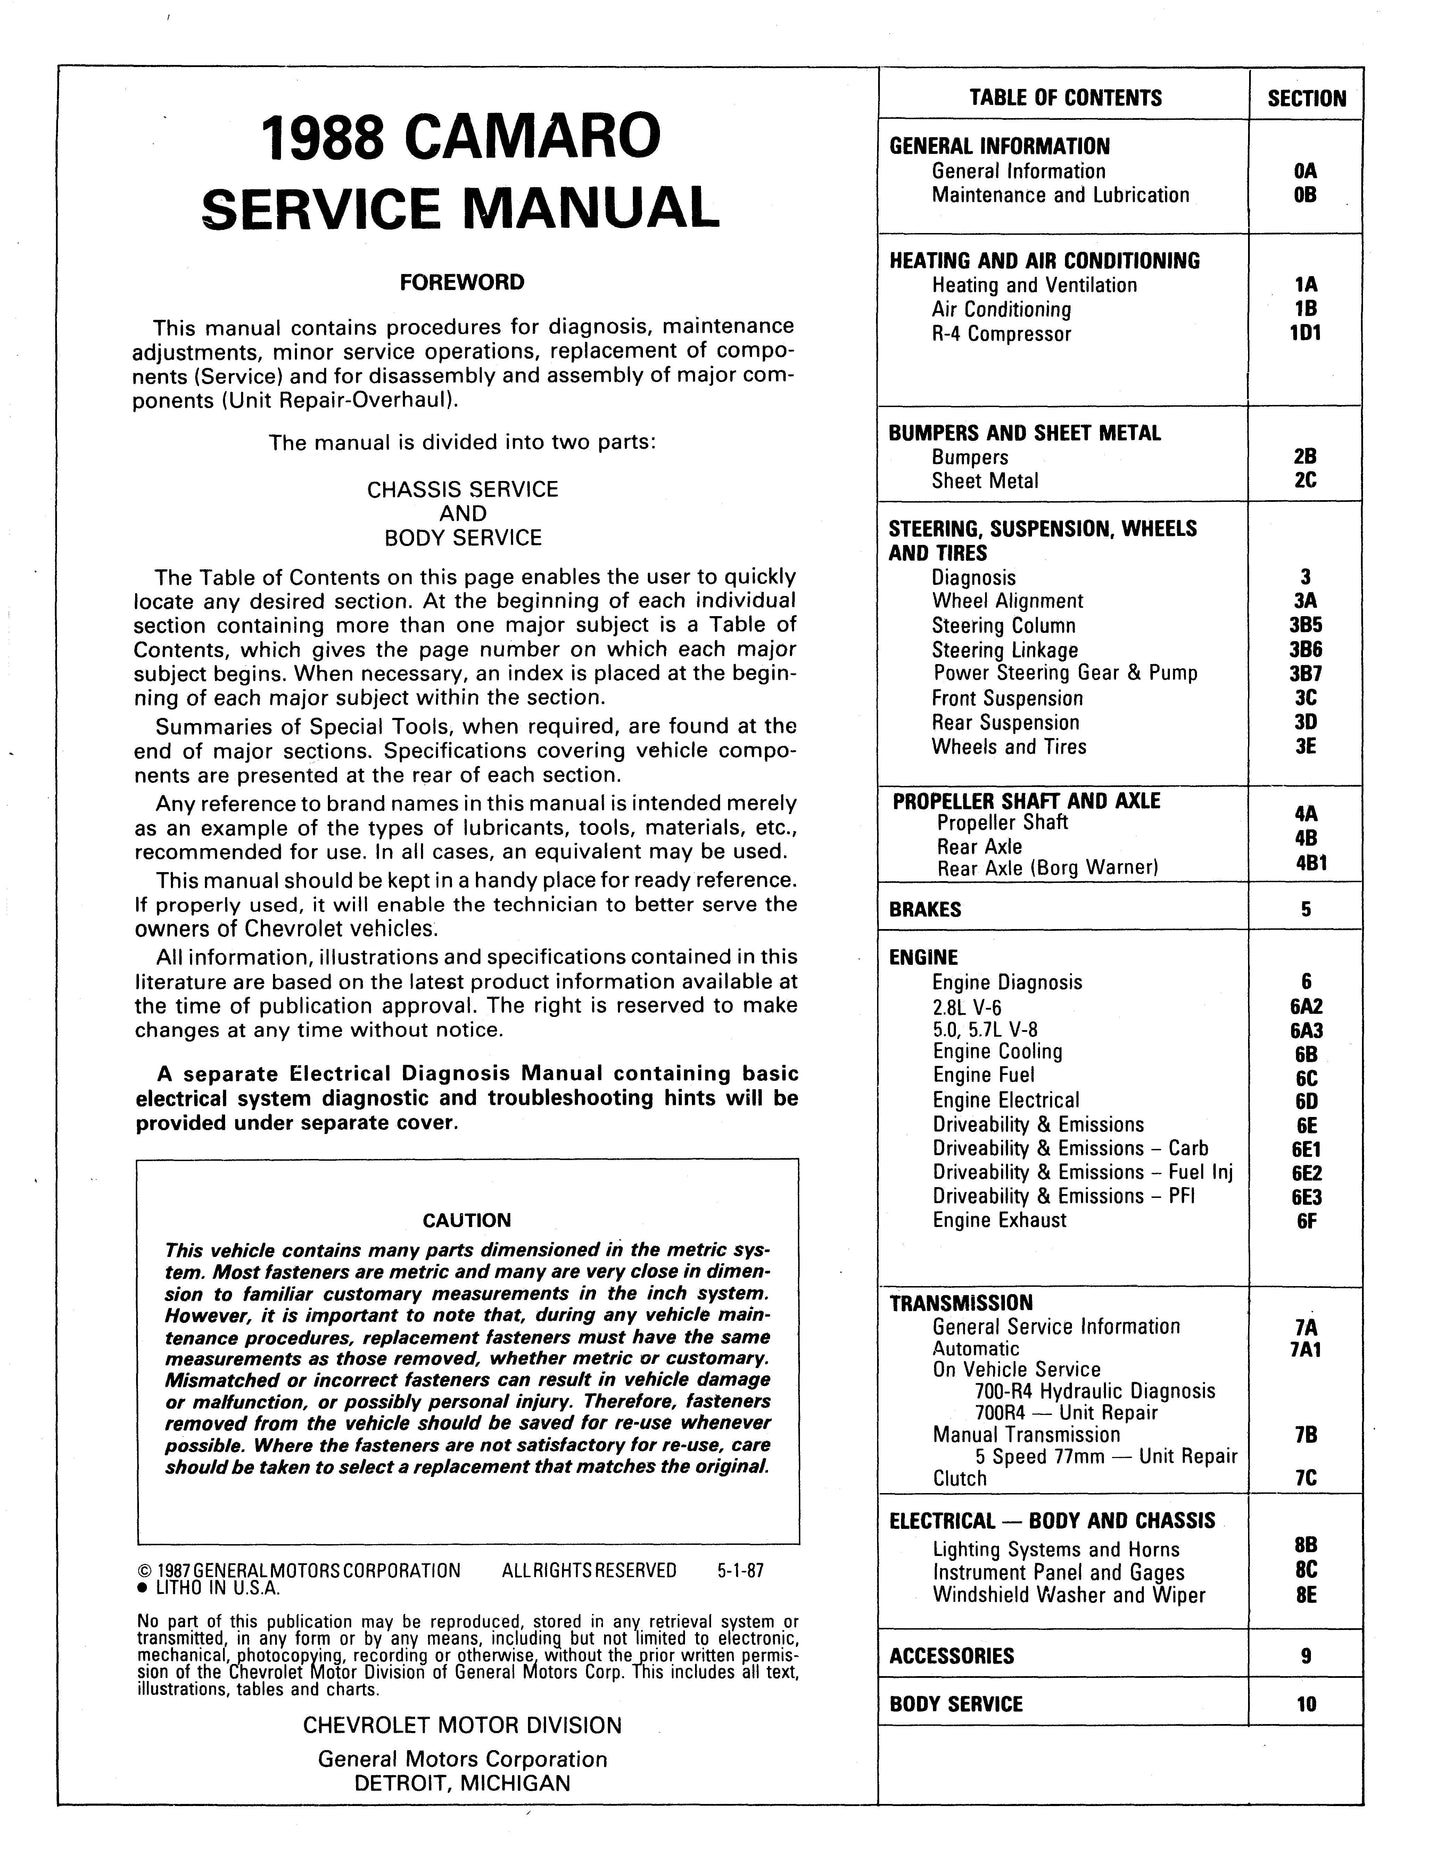 1988-1990 Chevrolet Camaro Shop Manuals